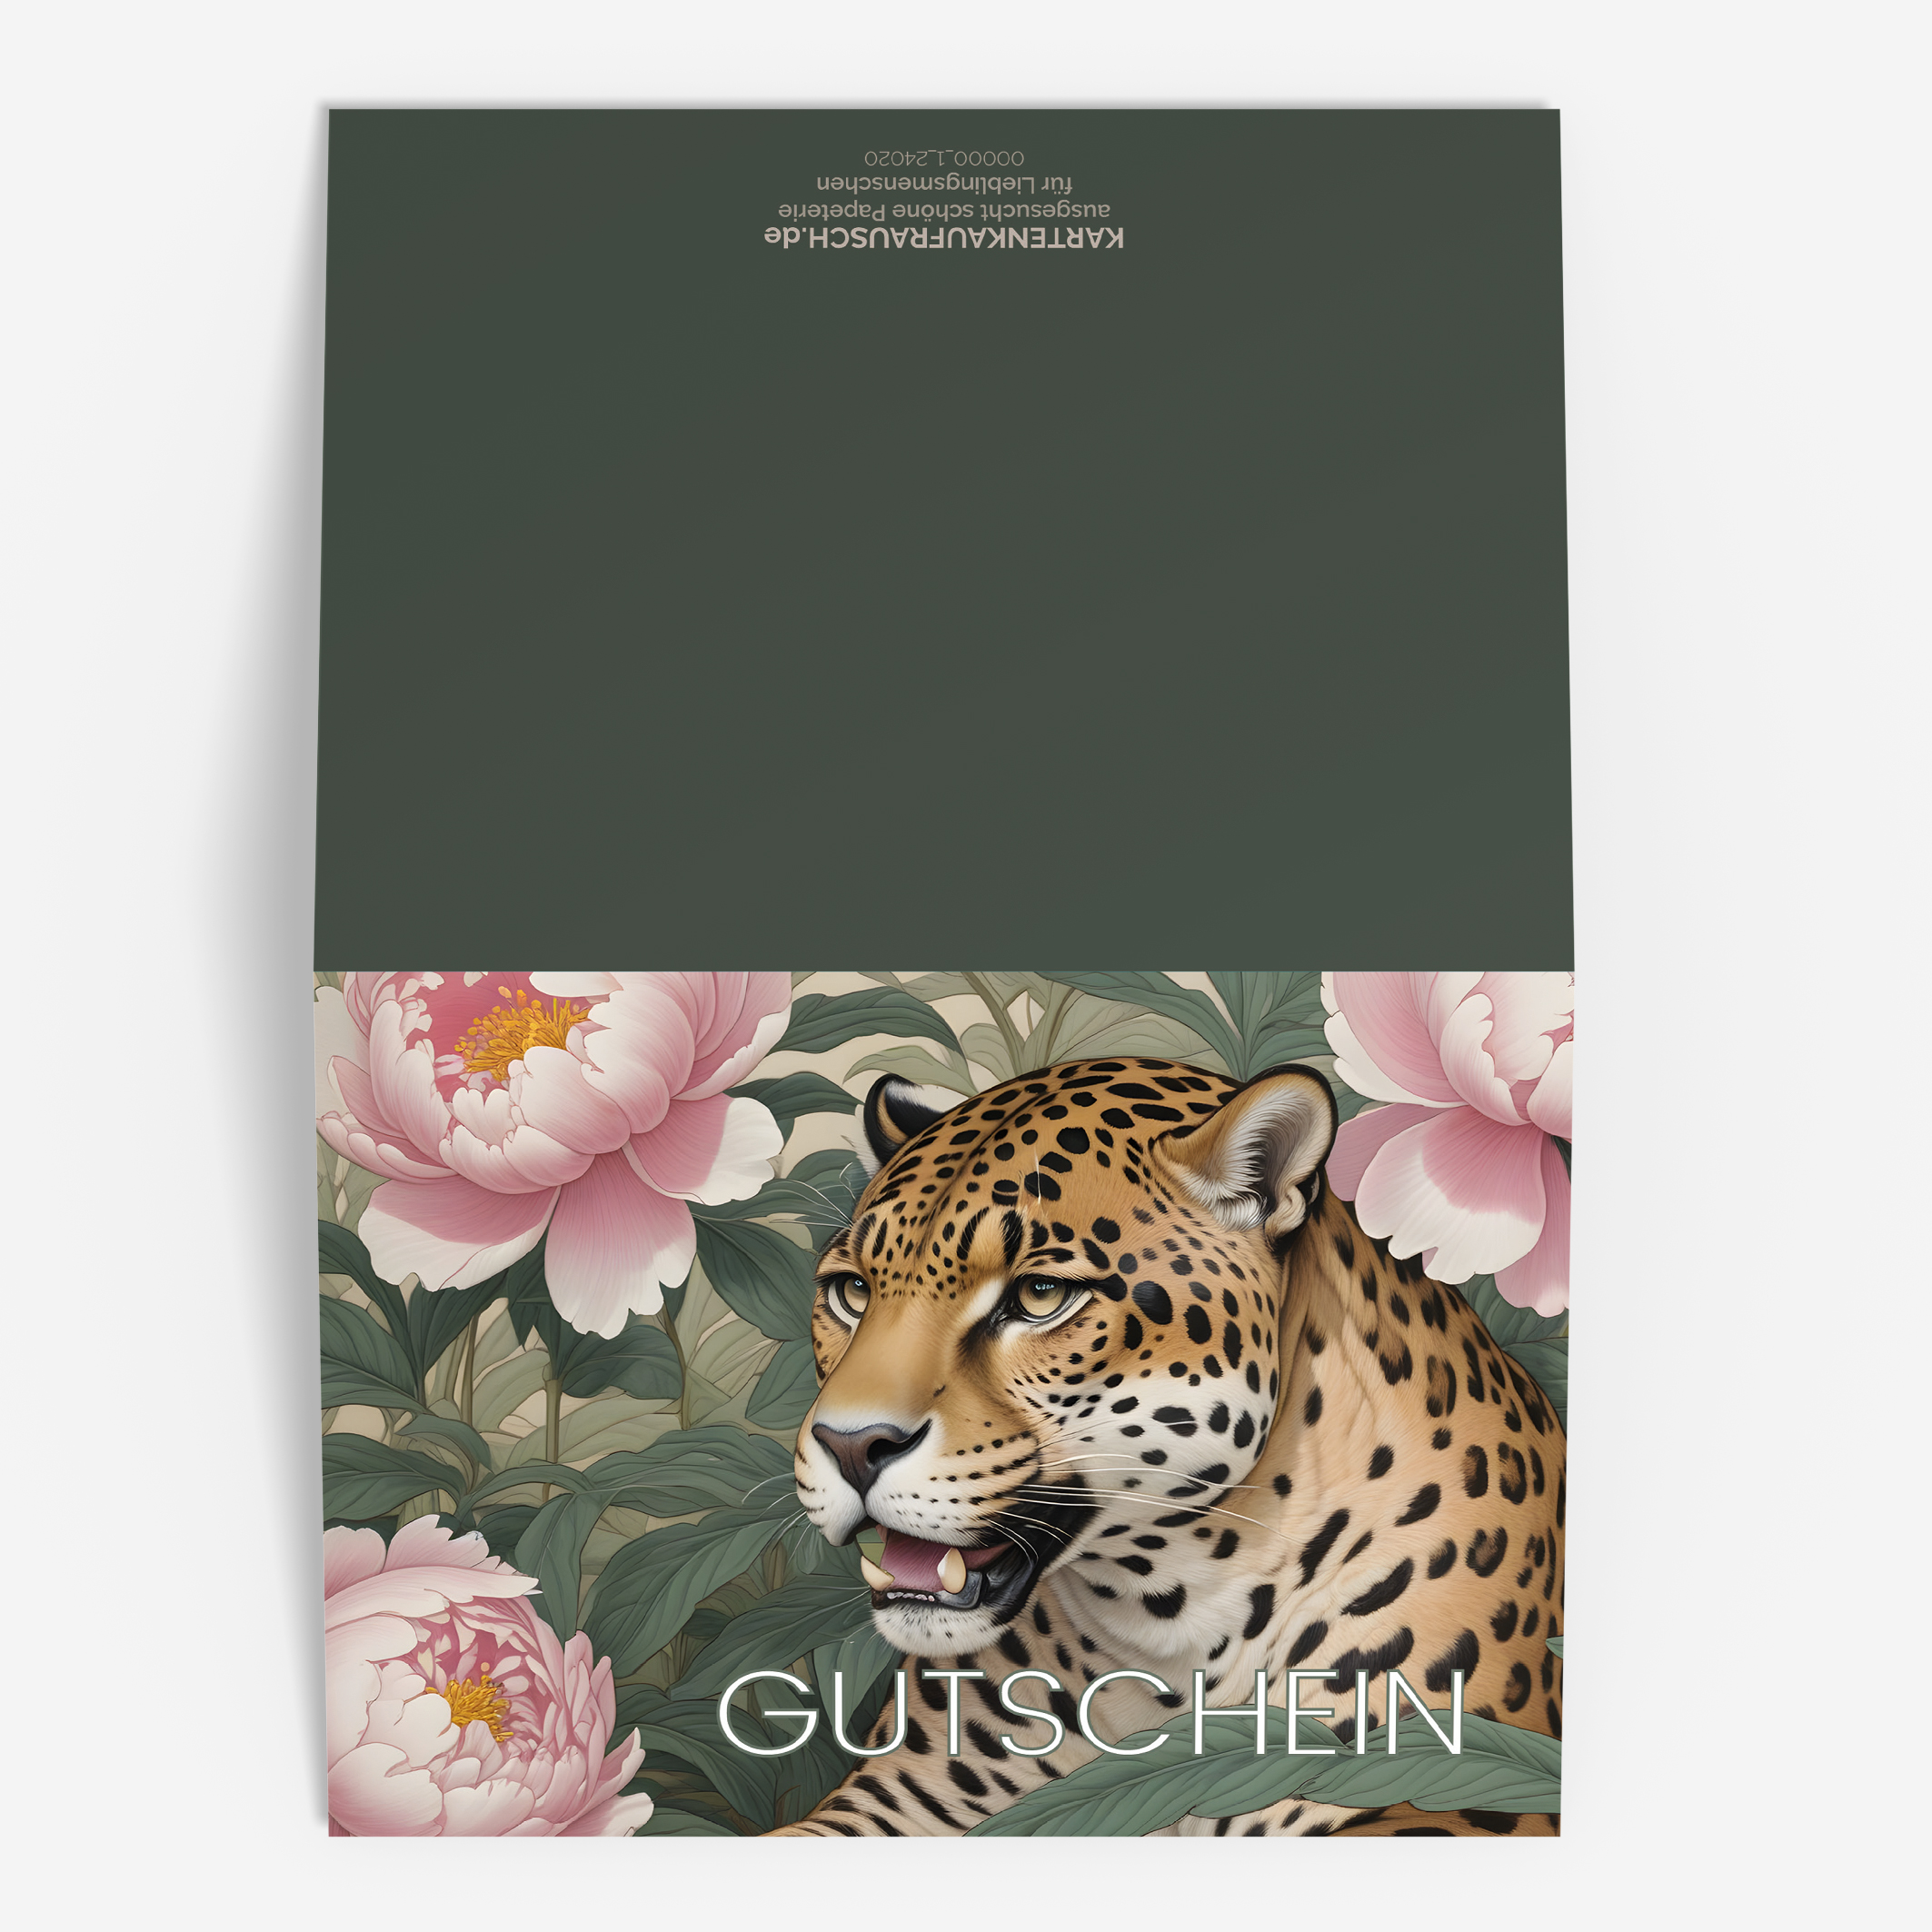 Blumen Klappkarte als Gutschein mit Jaguar 3 nachhaltige Klapp Grußkarte made in germany von Kartenkaufrausch.de